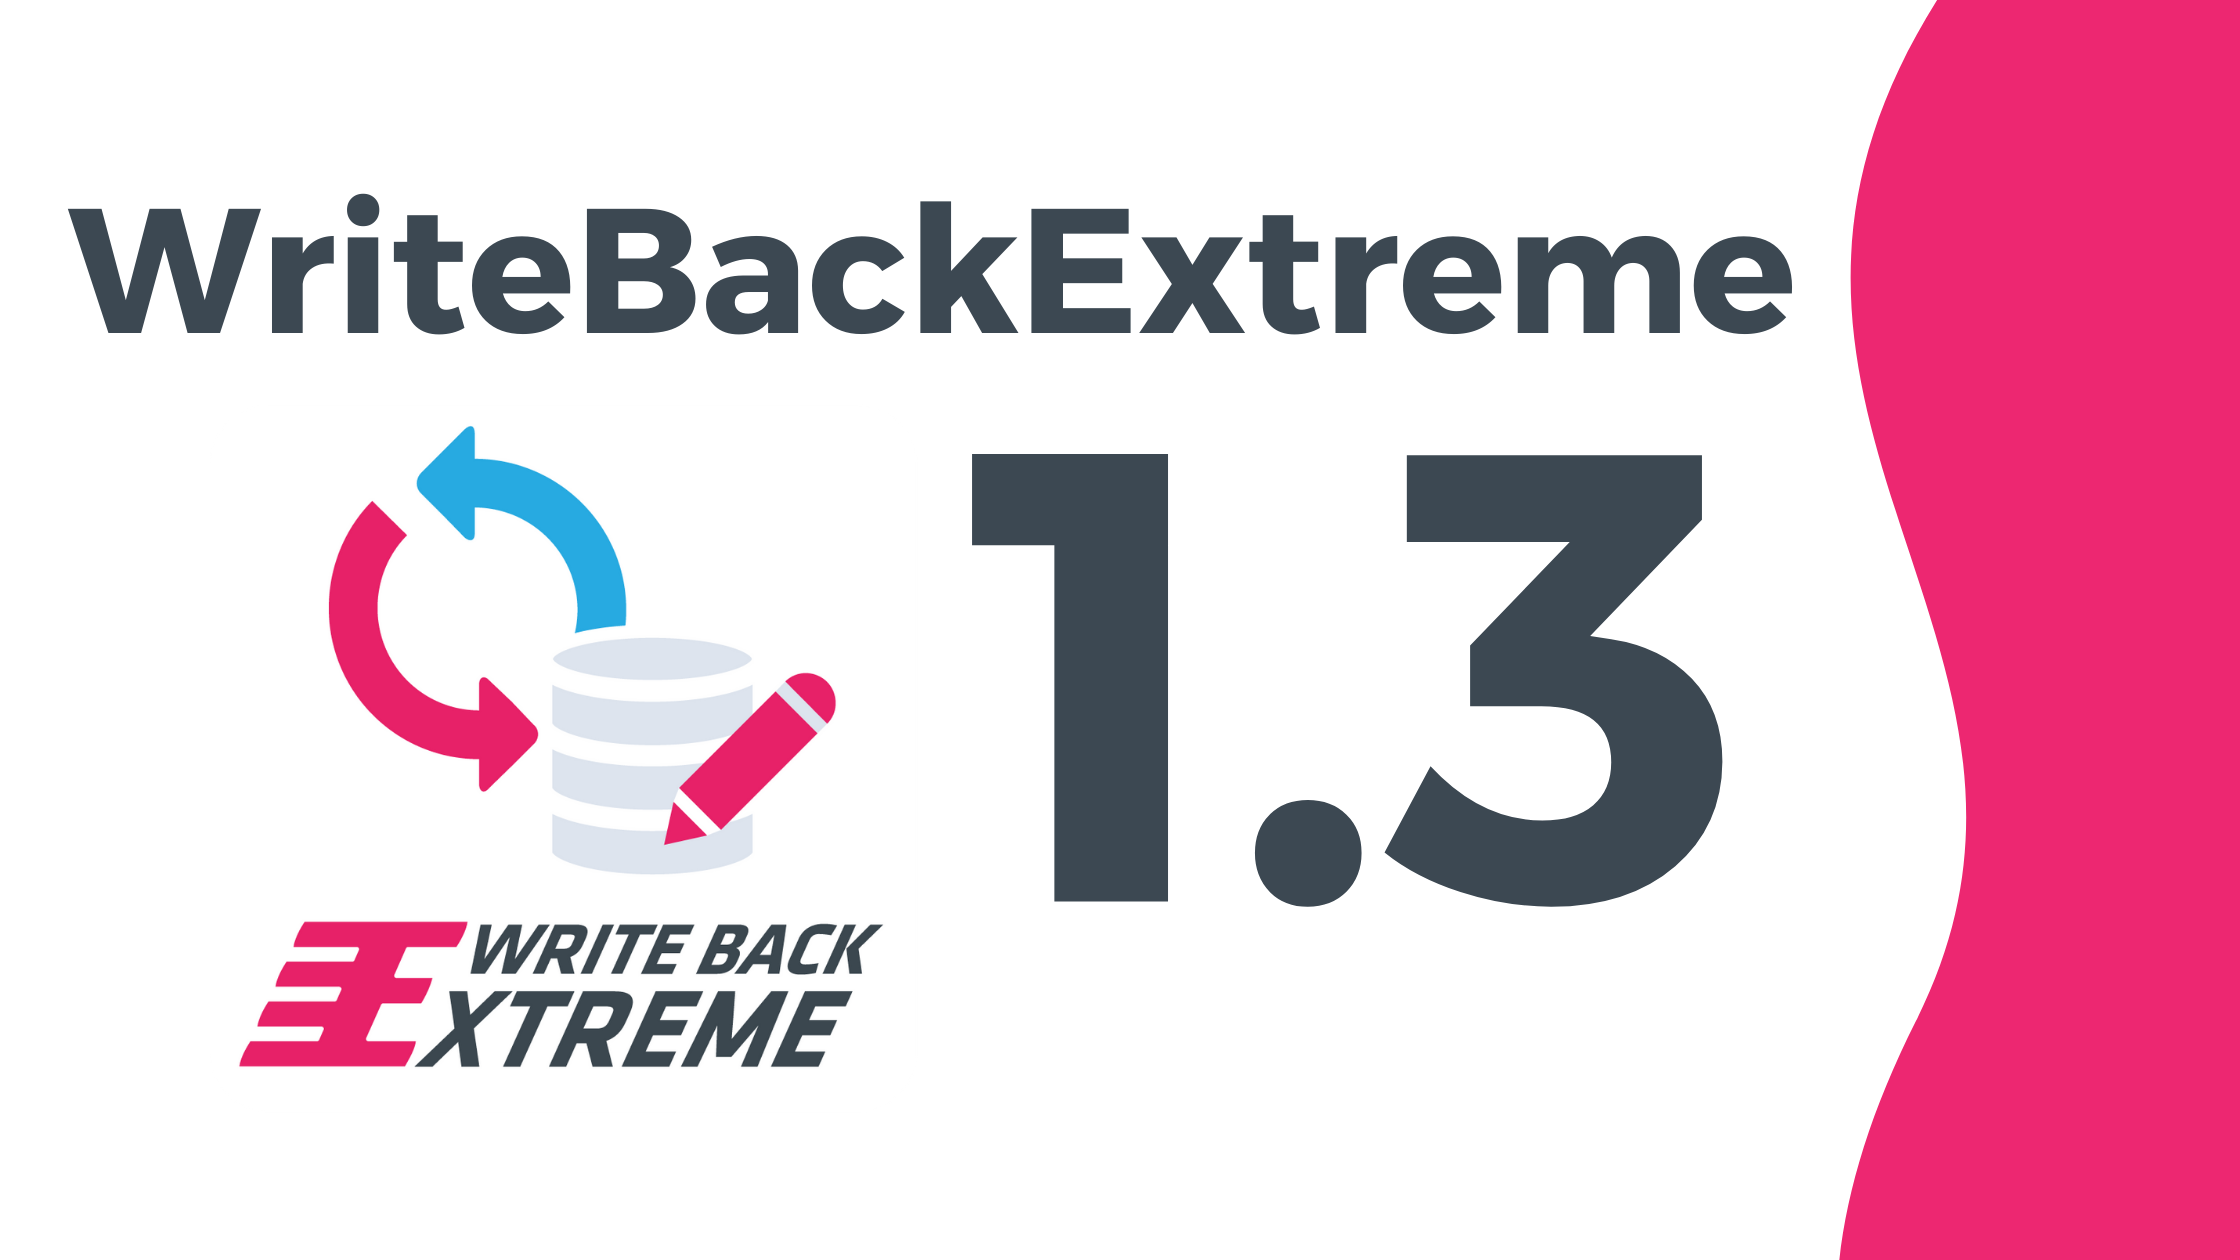 WriteBackExtreme release 1.3